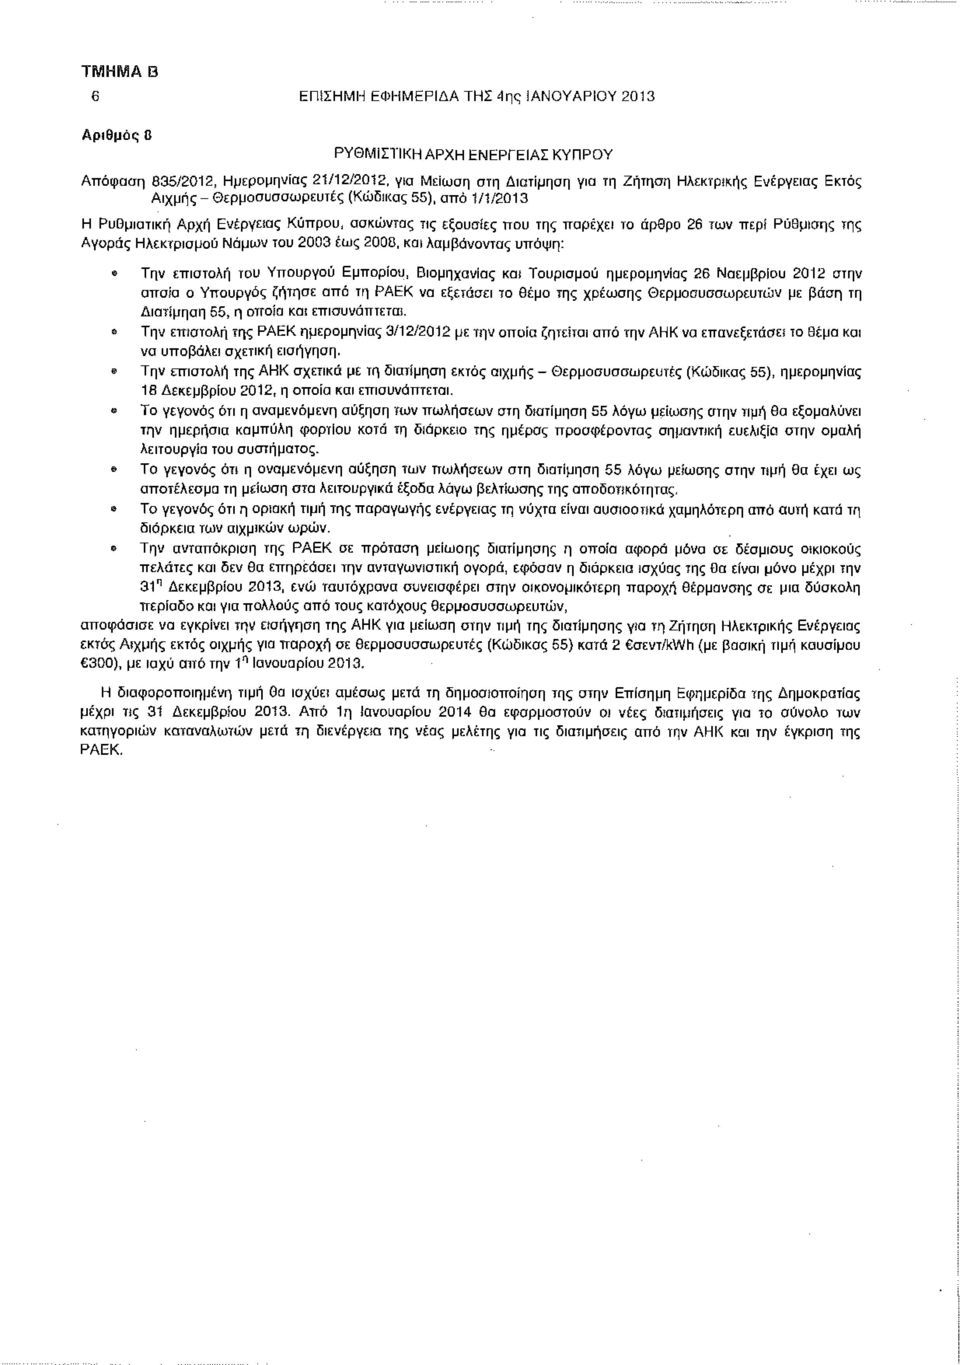 2008, λαμβάνοντας υπόψη: Την επιστολή του Υπουργού Εμπορίου, Βιομηχανίας Τουρισμού ημερομηνίας 26 Νοεμβρίου 2012 στην οποία ο Υπουργός ζήτησε από τη ΡΑΕΚ να εξετάσει το θέμα της χρέωσης